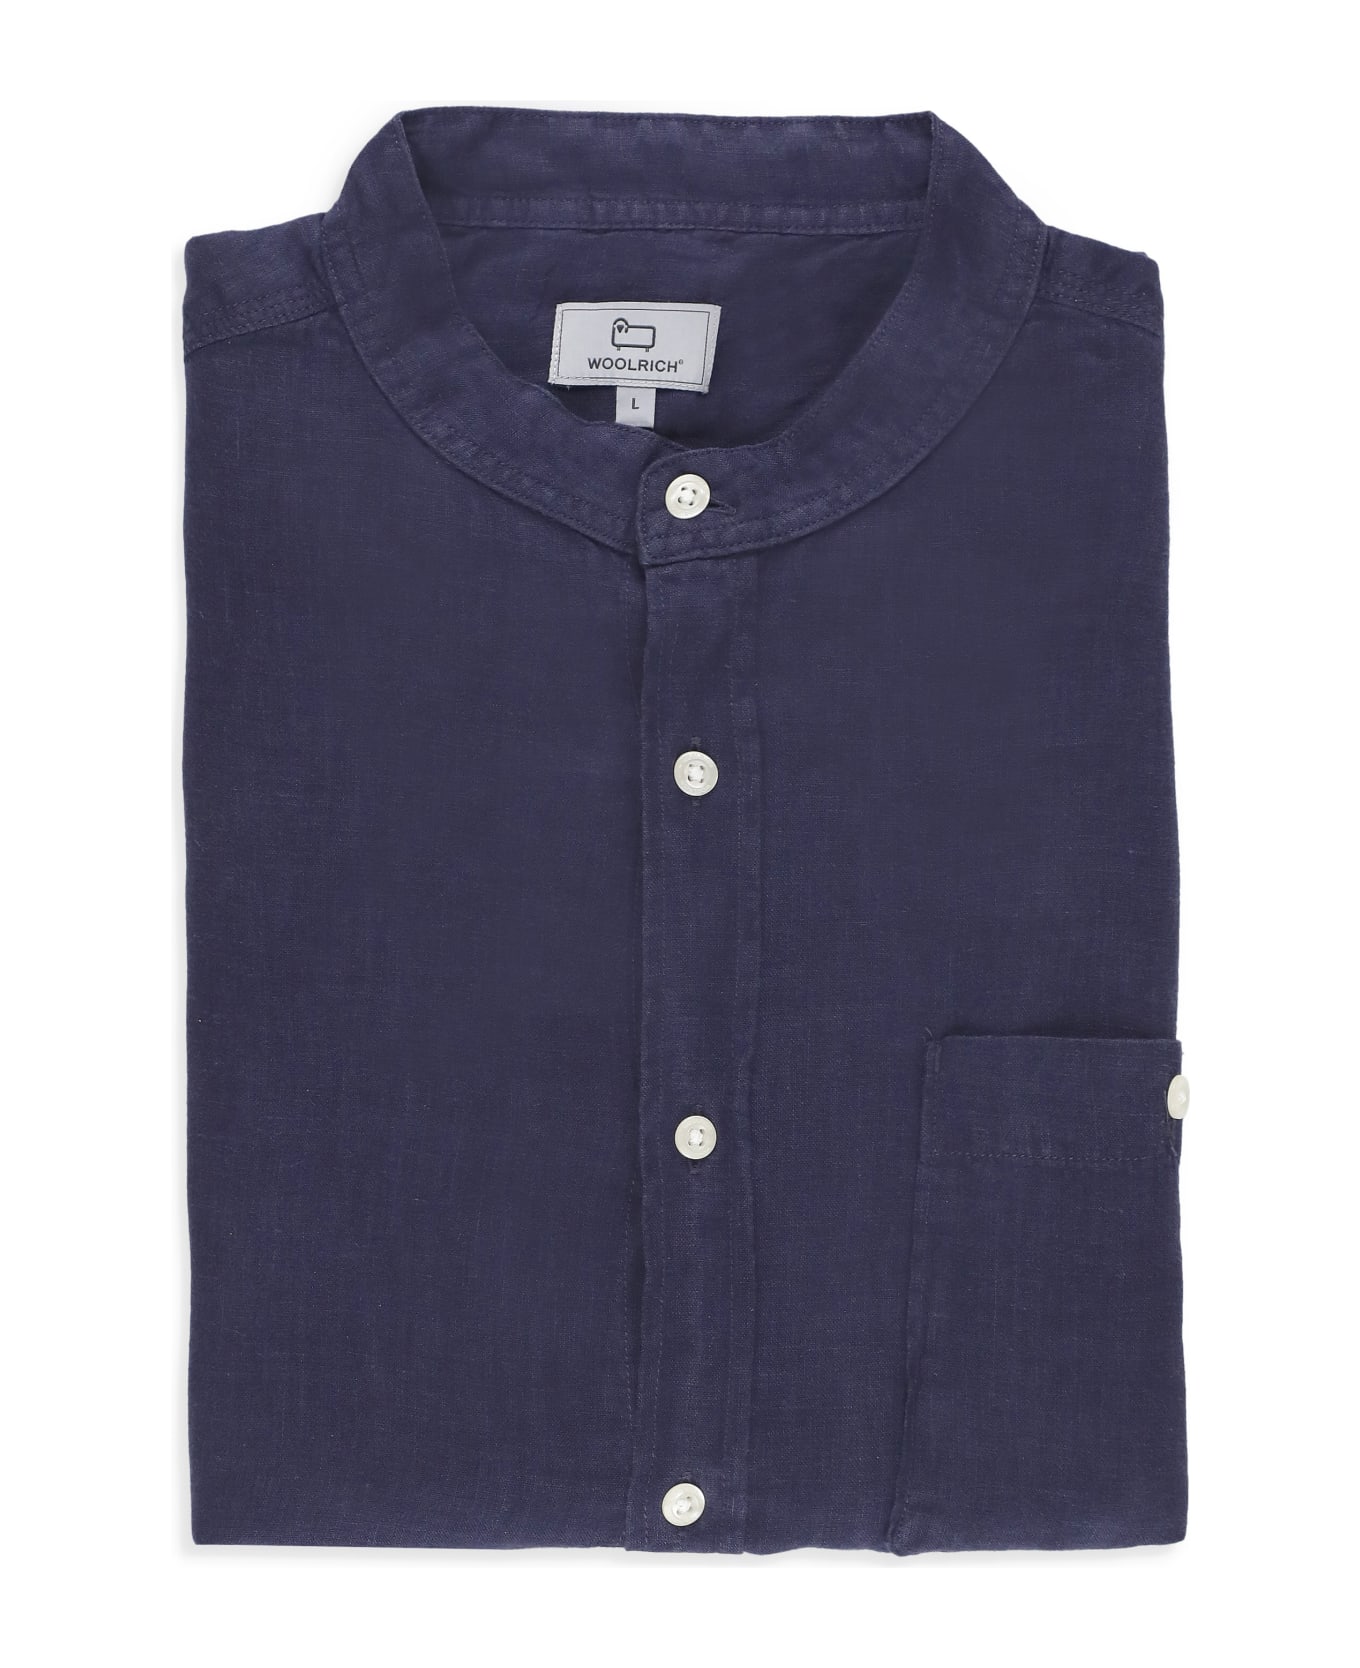 Woolrich Linen Shirt - NAVY